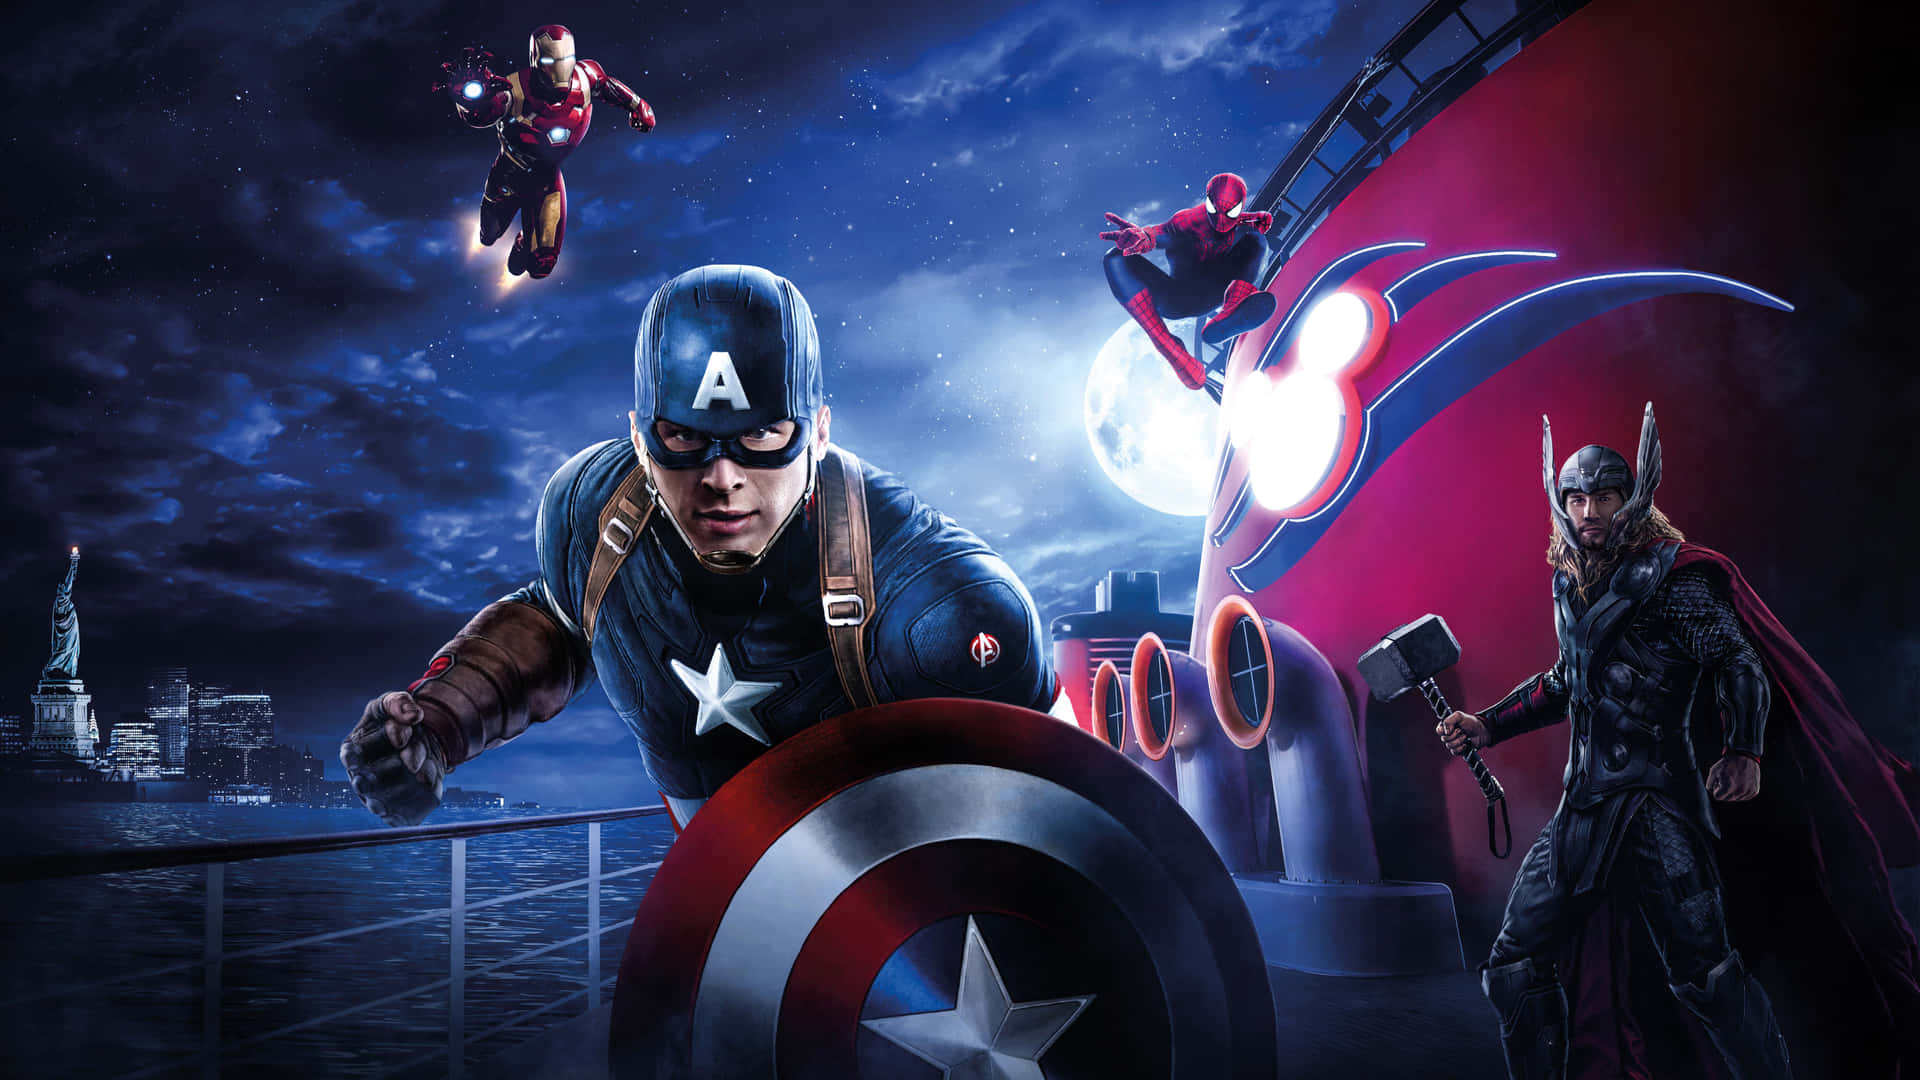 Prendid'assalto L'azione Con Questa Stupefacente Carta Da Parati Per Desktop Di Captain America. Sfondo